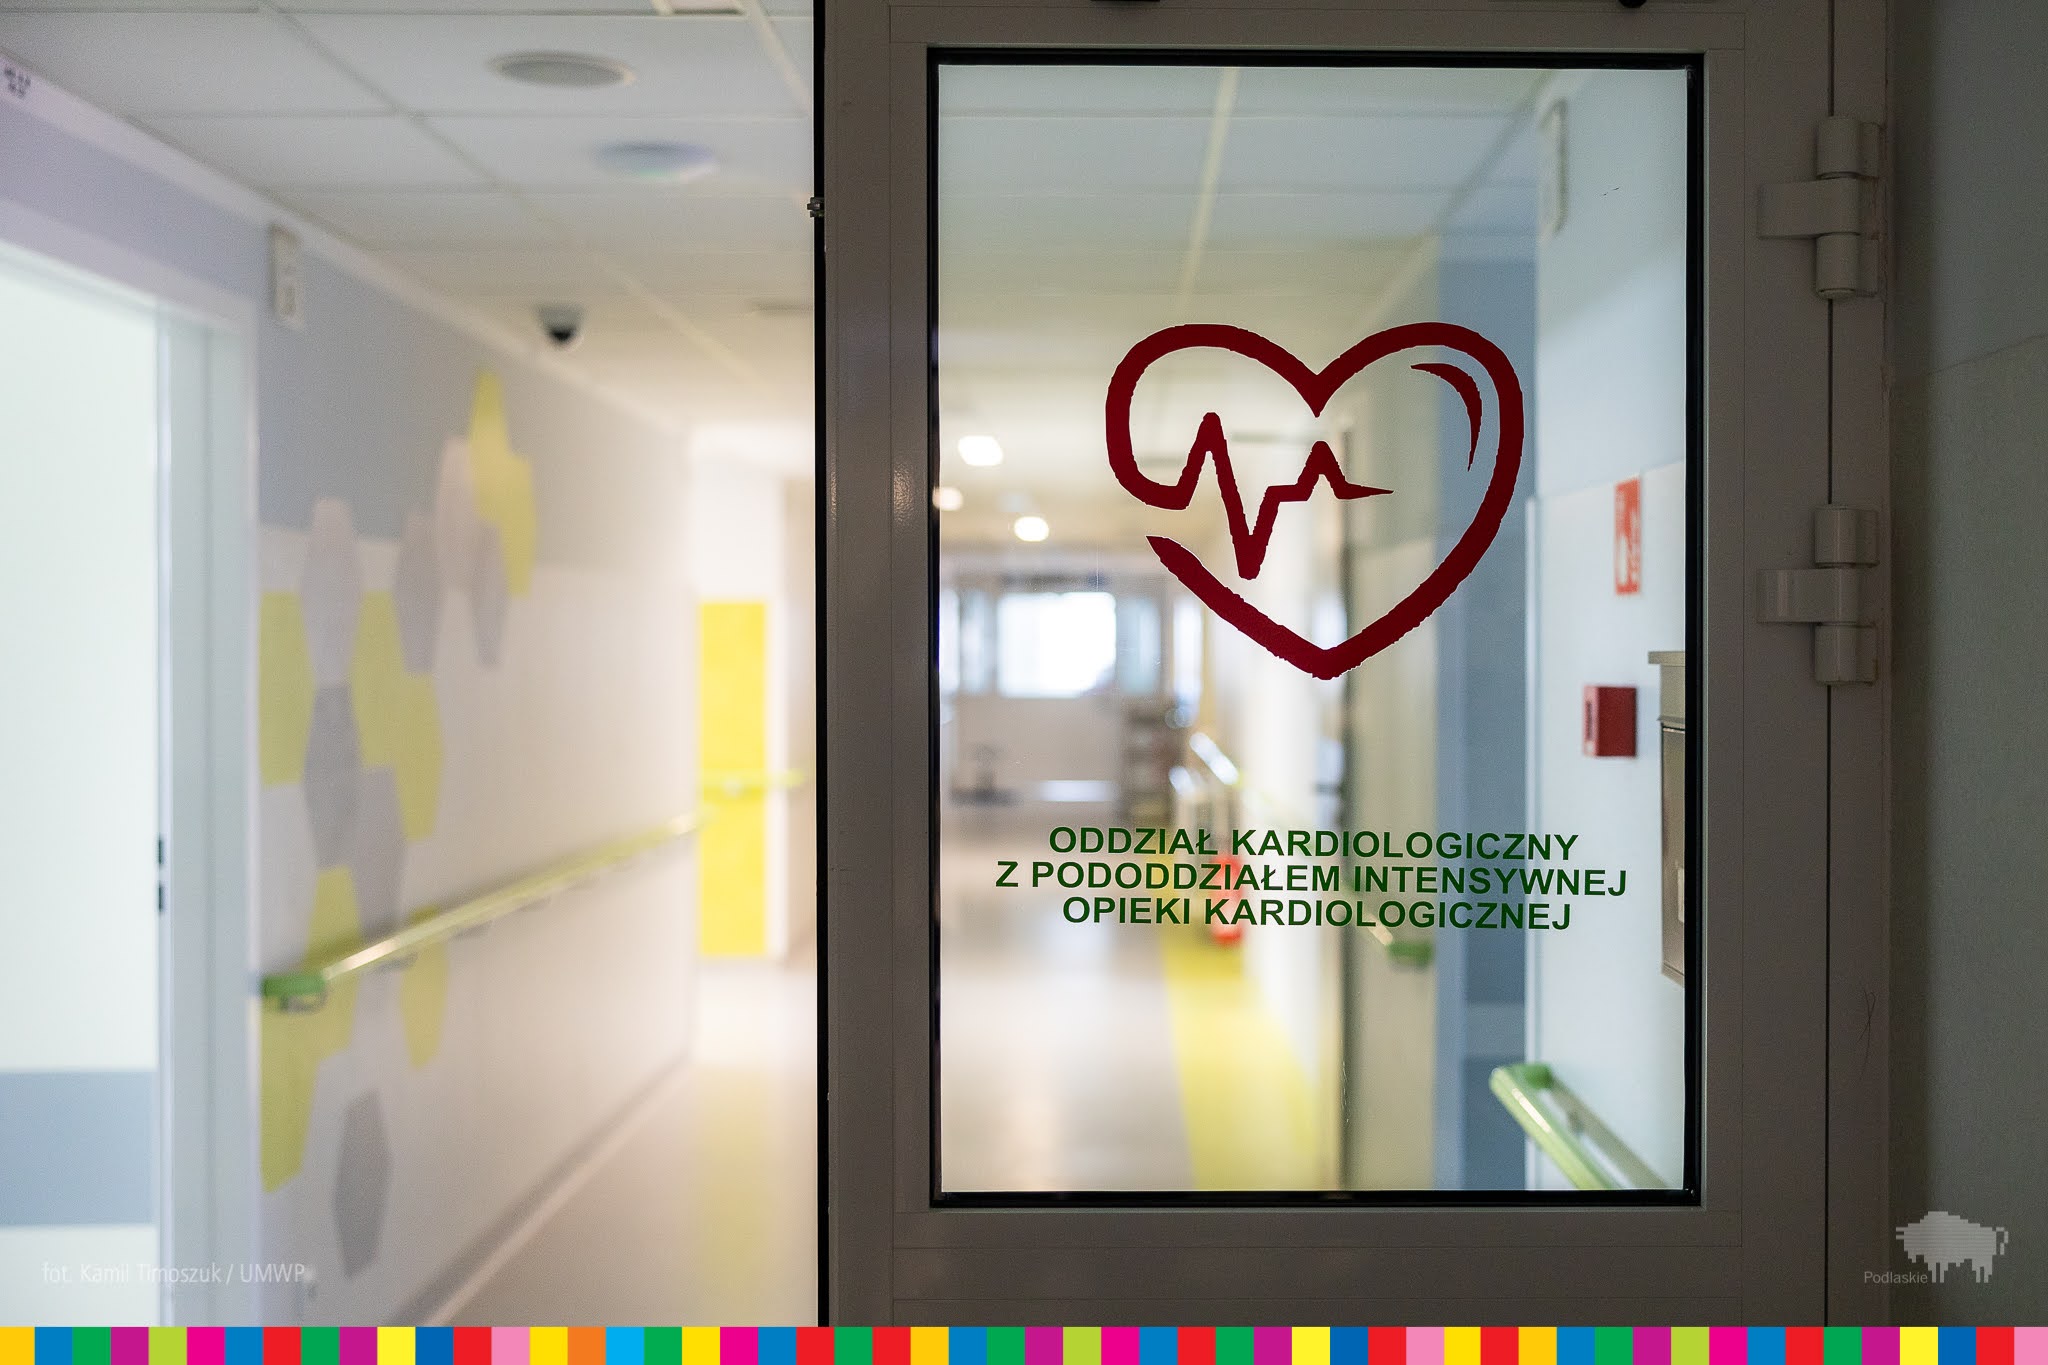 drzwi na korytarzu w szpitalu z napisem Oddział Kardiologiczny z Pododdziałem Intensywnej Opieki Kardiologicznej 